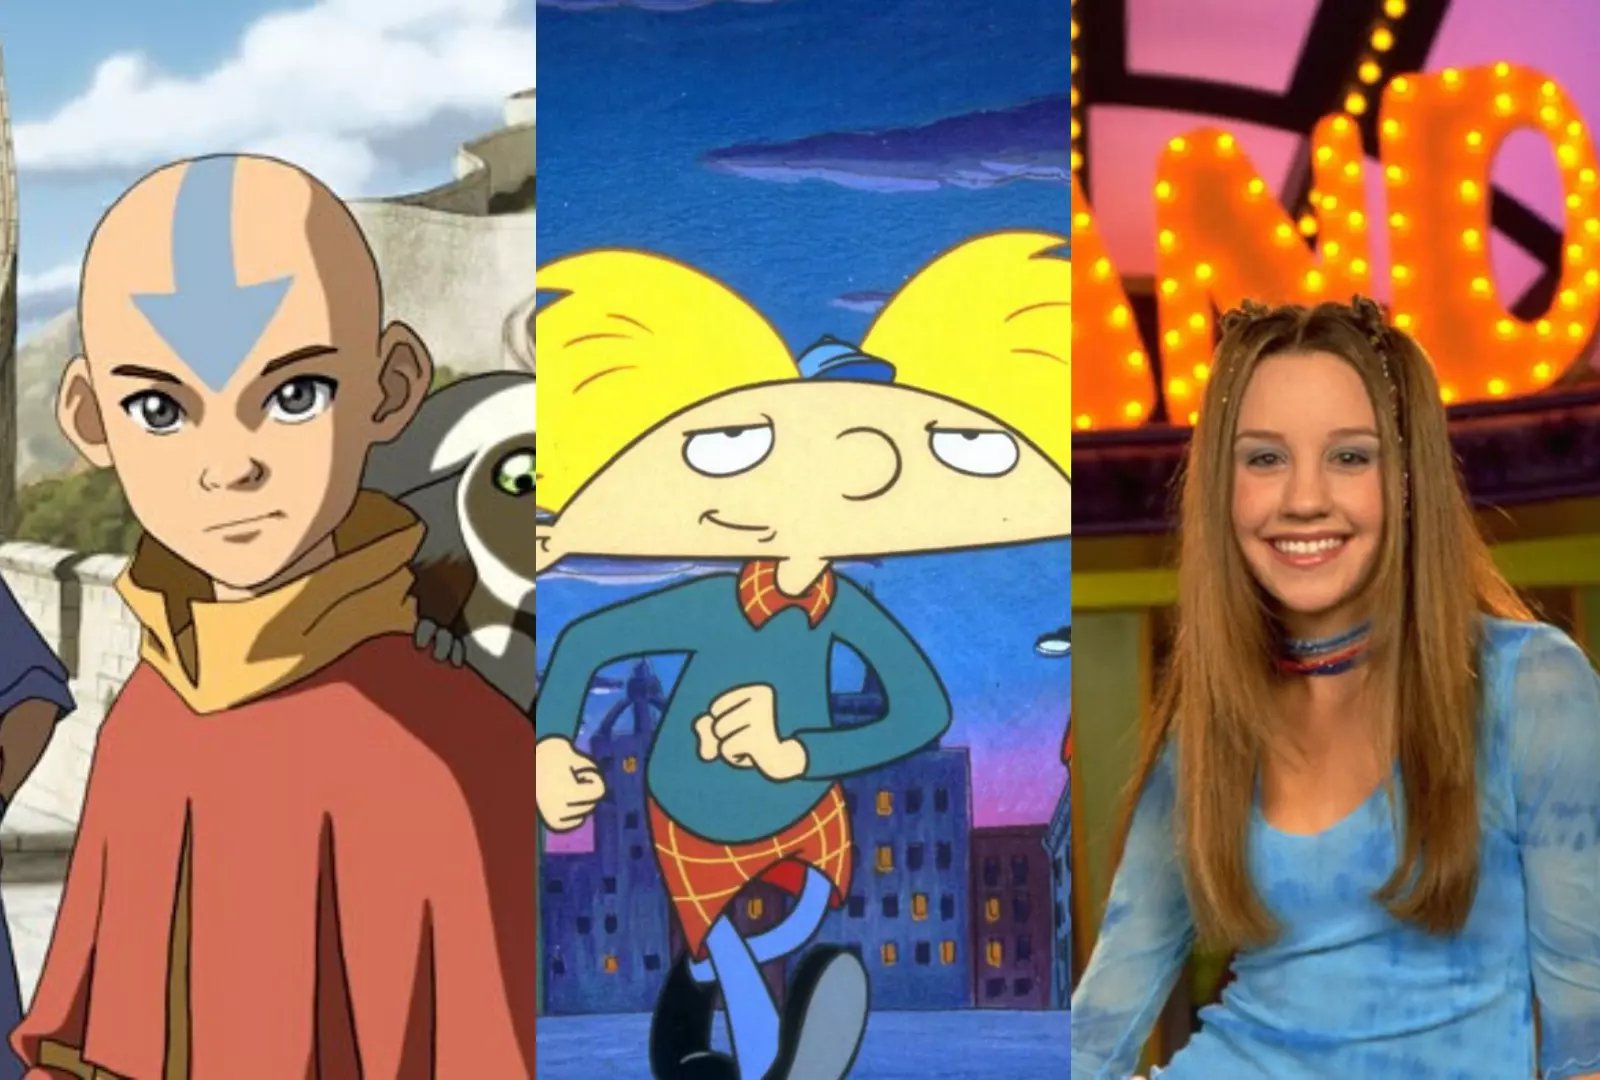 2006/2007 Nickelodeon vs 2006/2007 Cartoon Network? : r/Zillennials